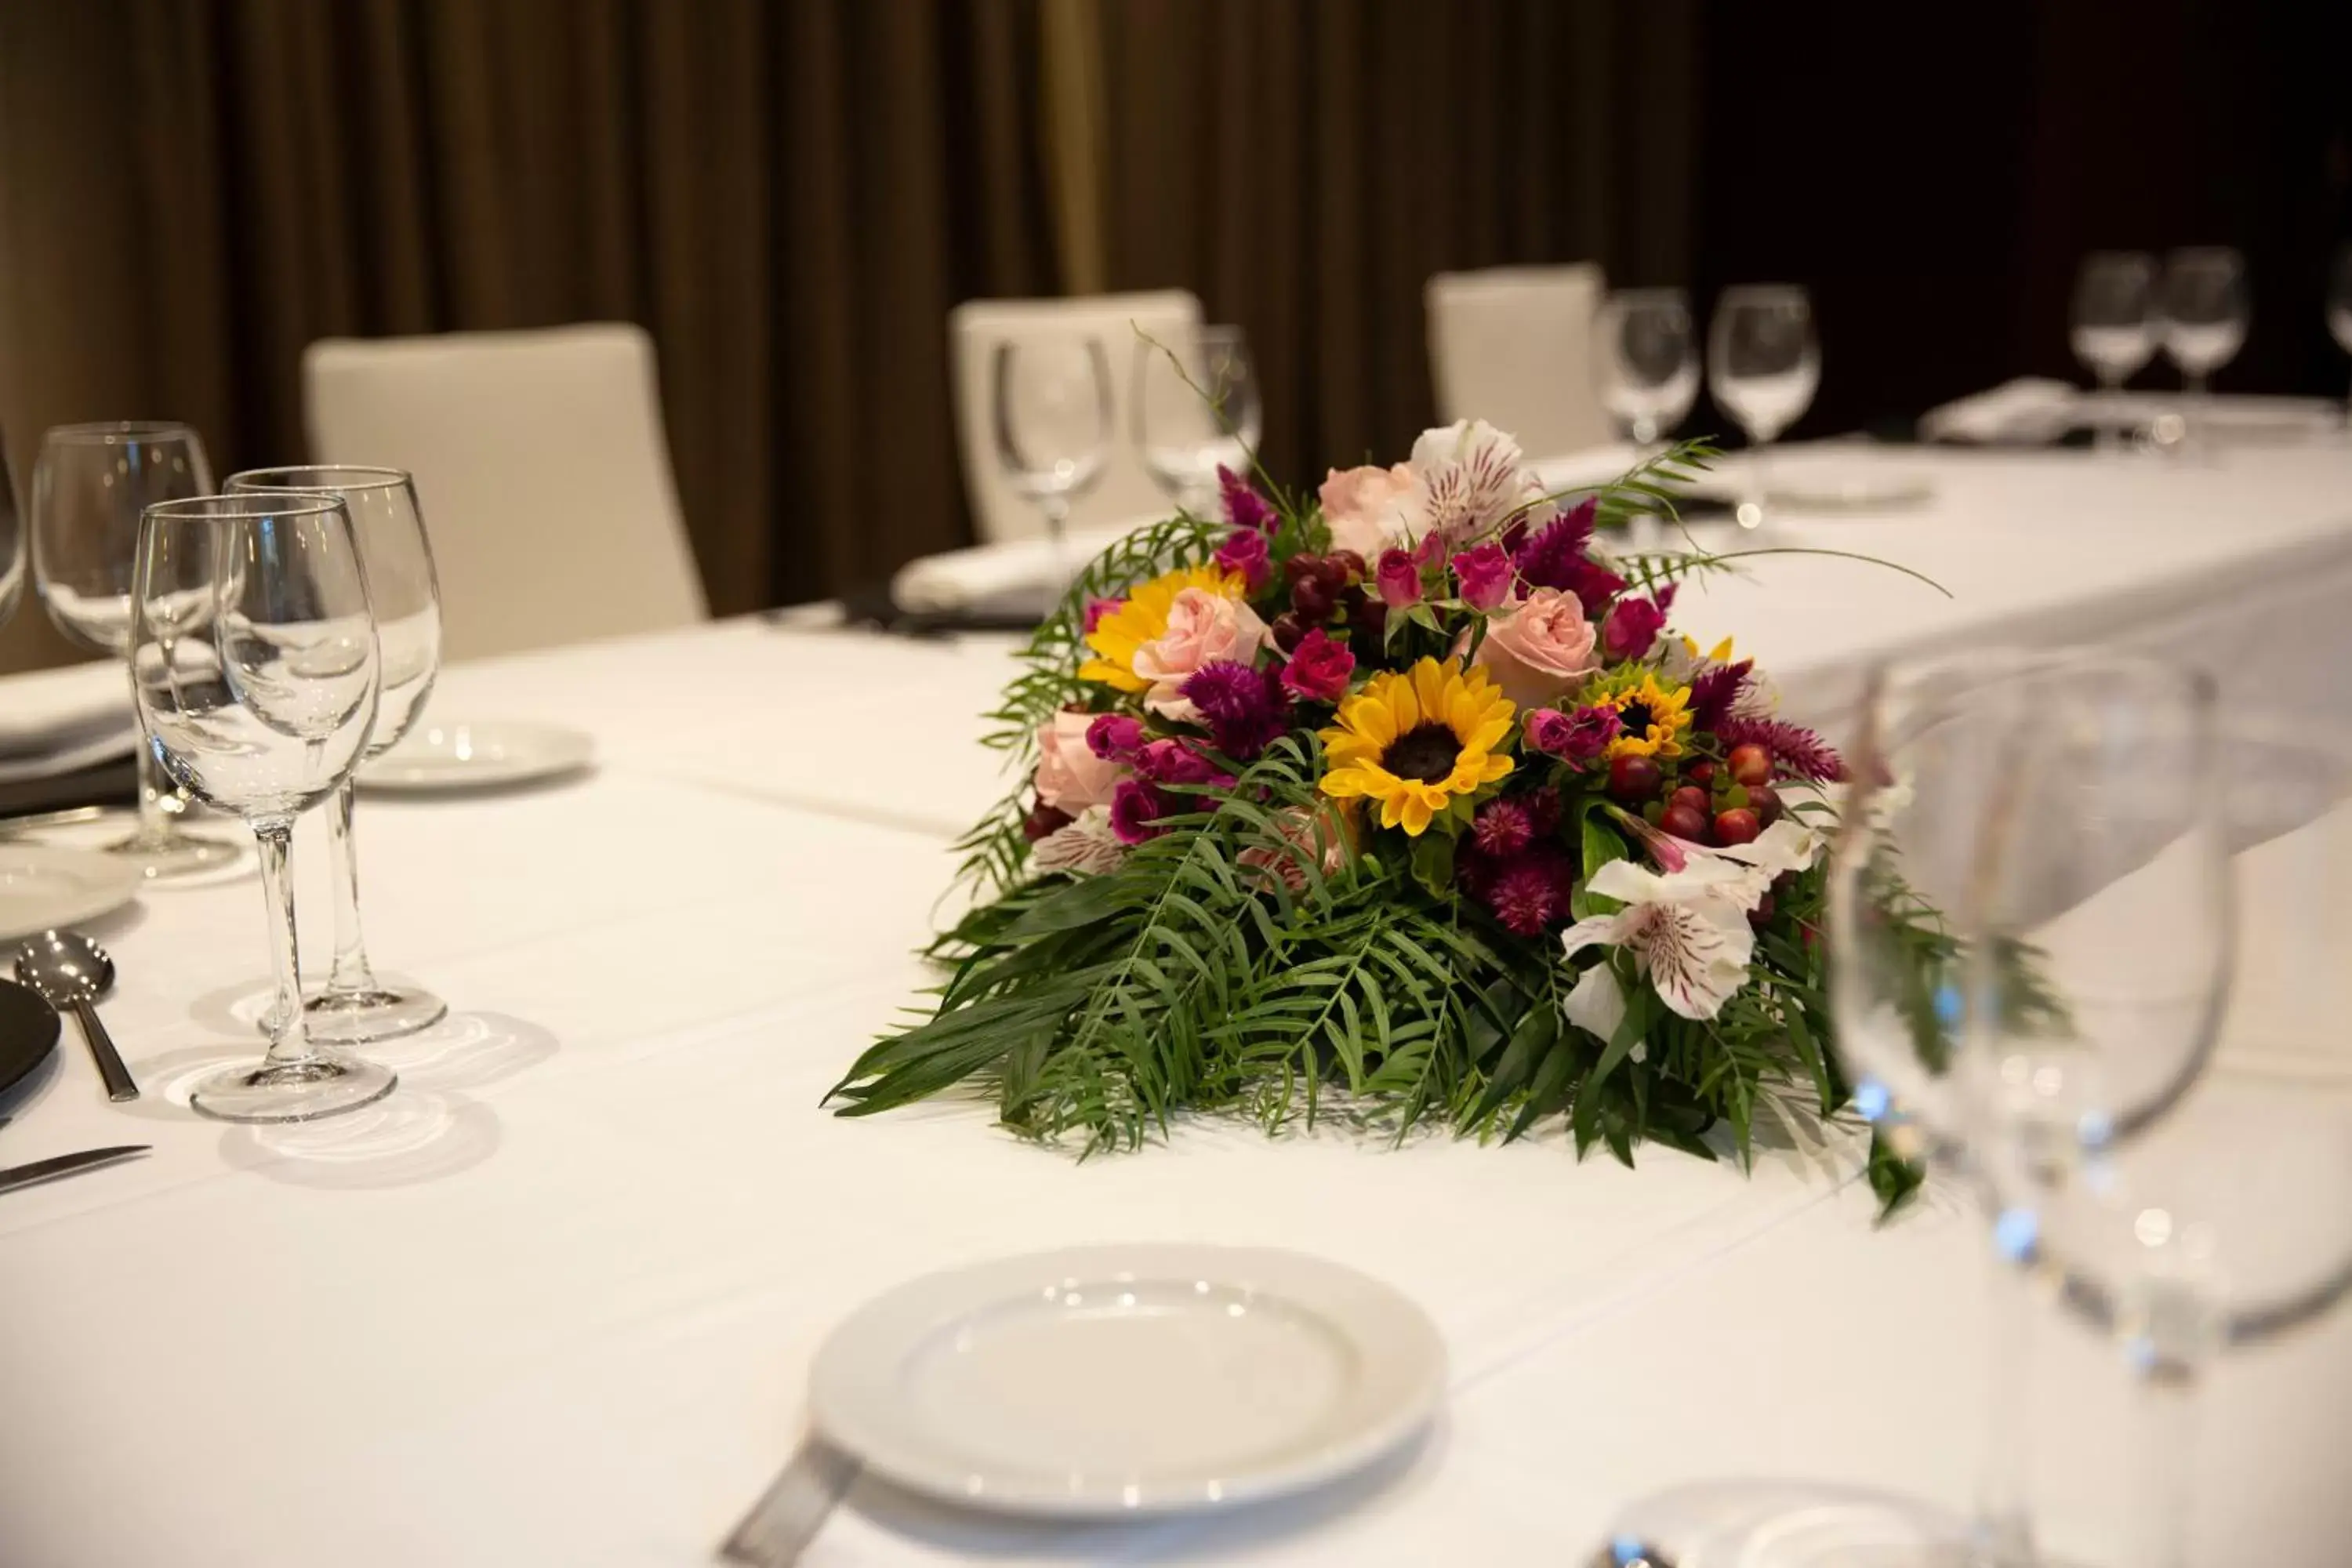 Banquet/Function facilities, Restaurant/Places to Eat in Palacio de los Blasones Suites